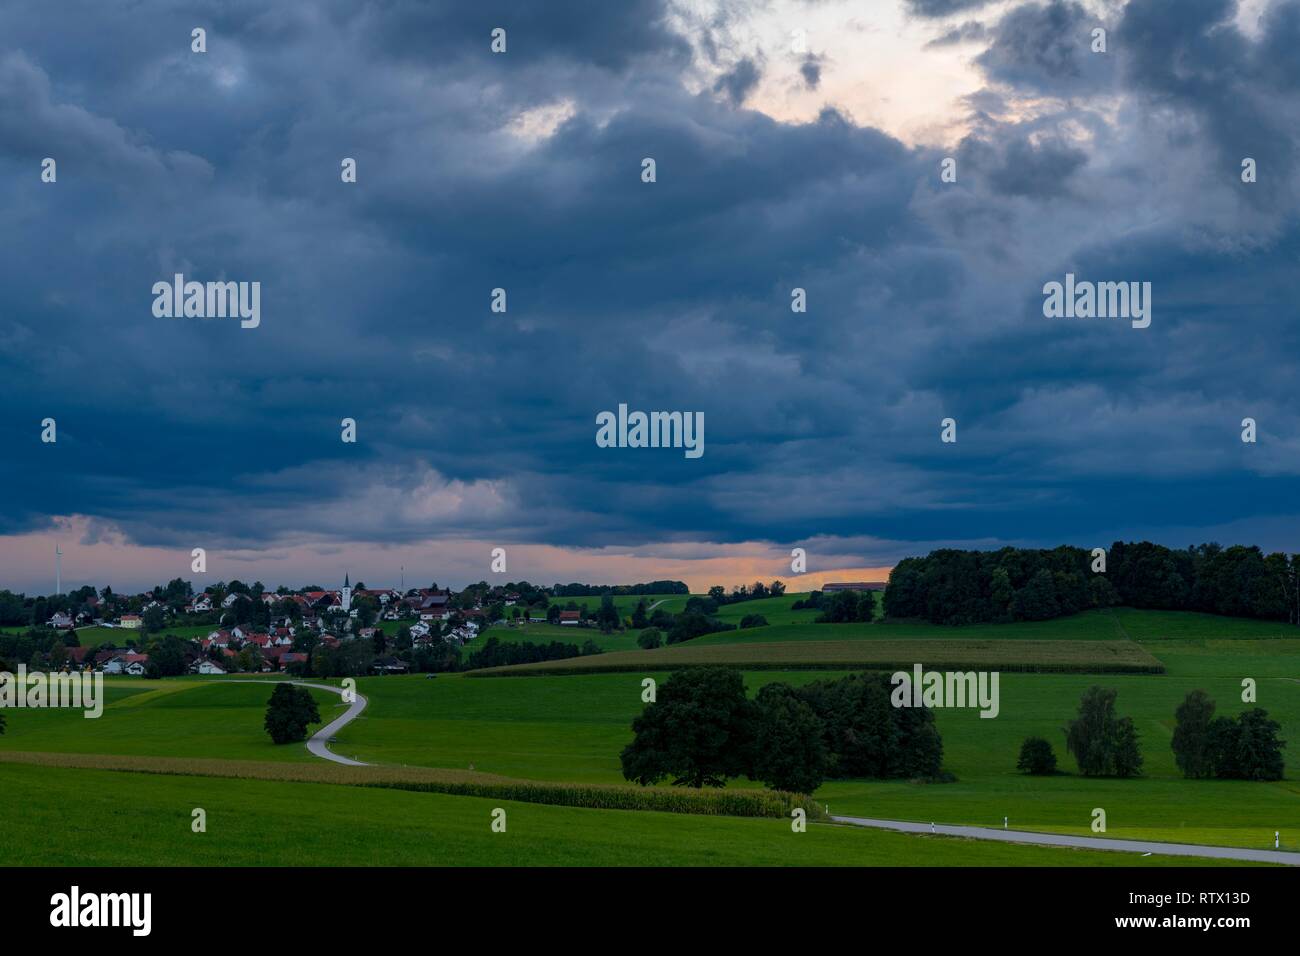 Gewitter Himmel mit kleinen Dorf und wiesen Landschaft, Köngetried, Unterallgäu, Bayern, Deutschland Stockfoto